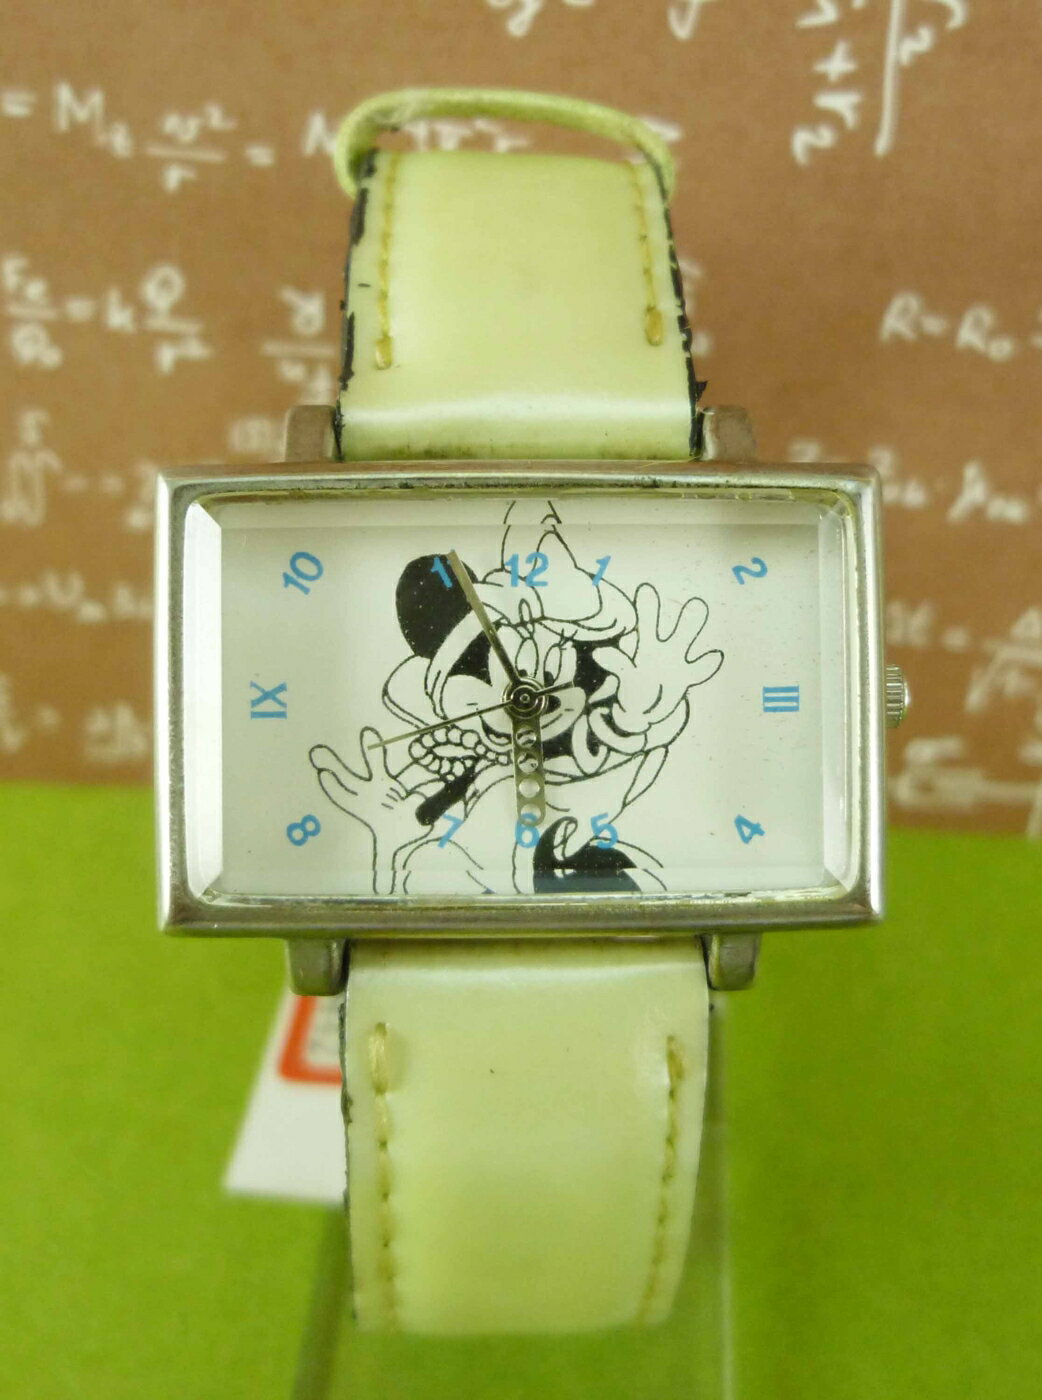 【震撼精品百貨】米奇/米妮 Micky Mouse 造型手錶-米妮哈囉圖案-粉綠色 震撼日式精品百貨